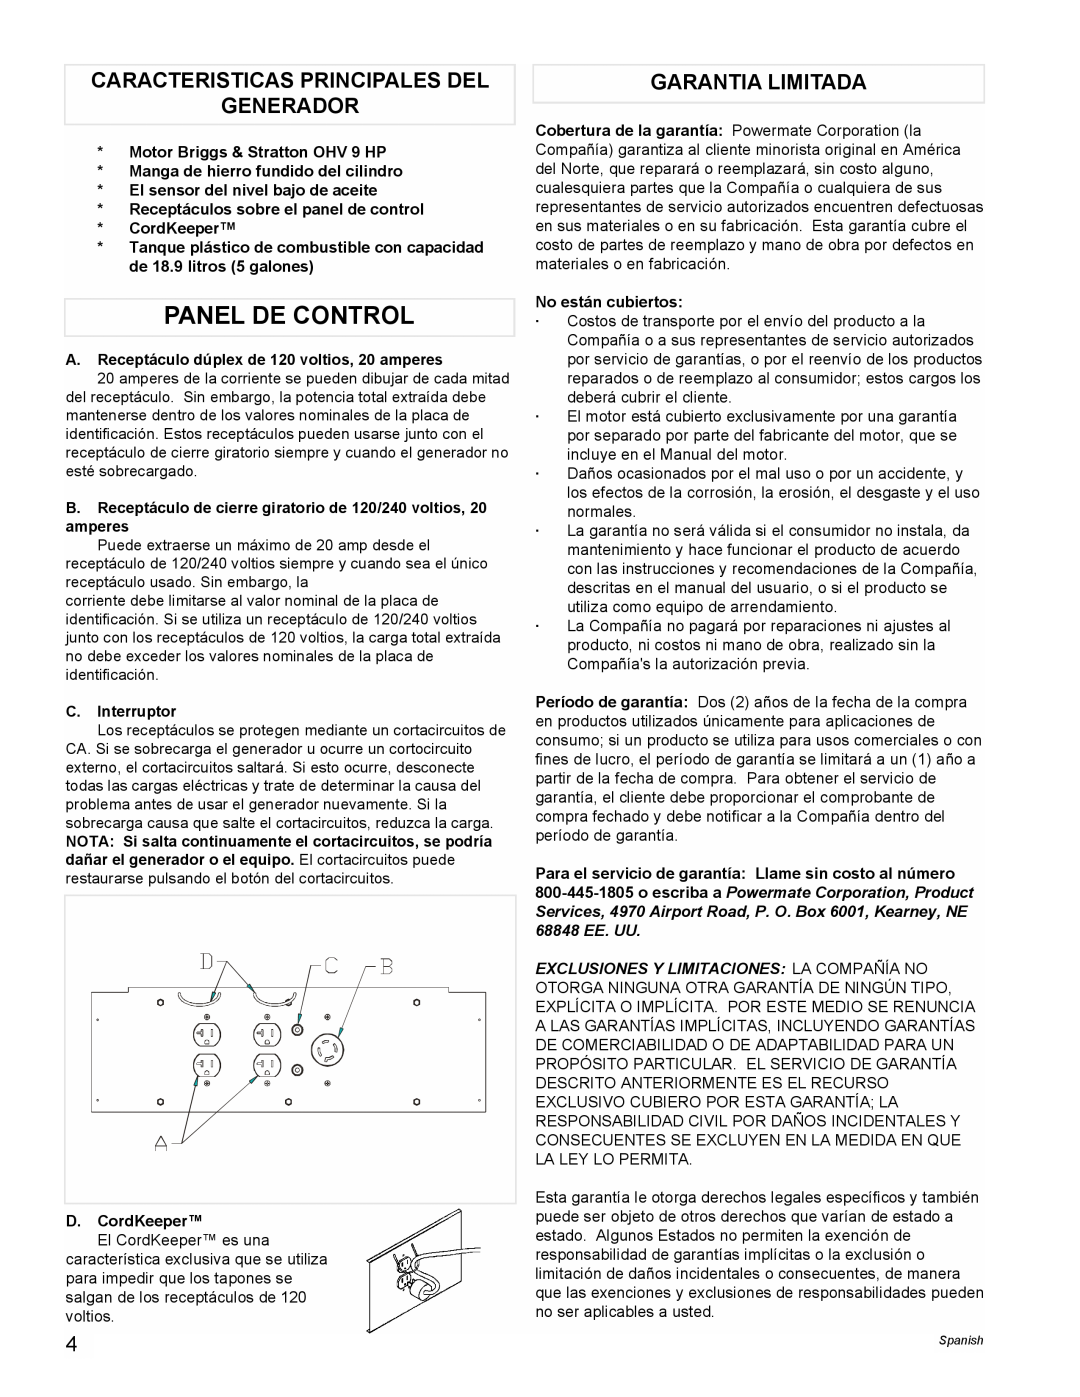 Powermate PMA535202 manual Panel De Control, Caracteristicas Principales Del Generador, Garantia Limitada 